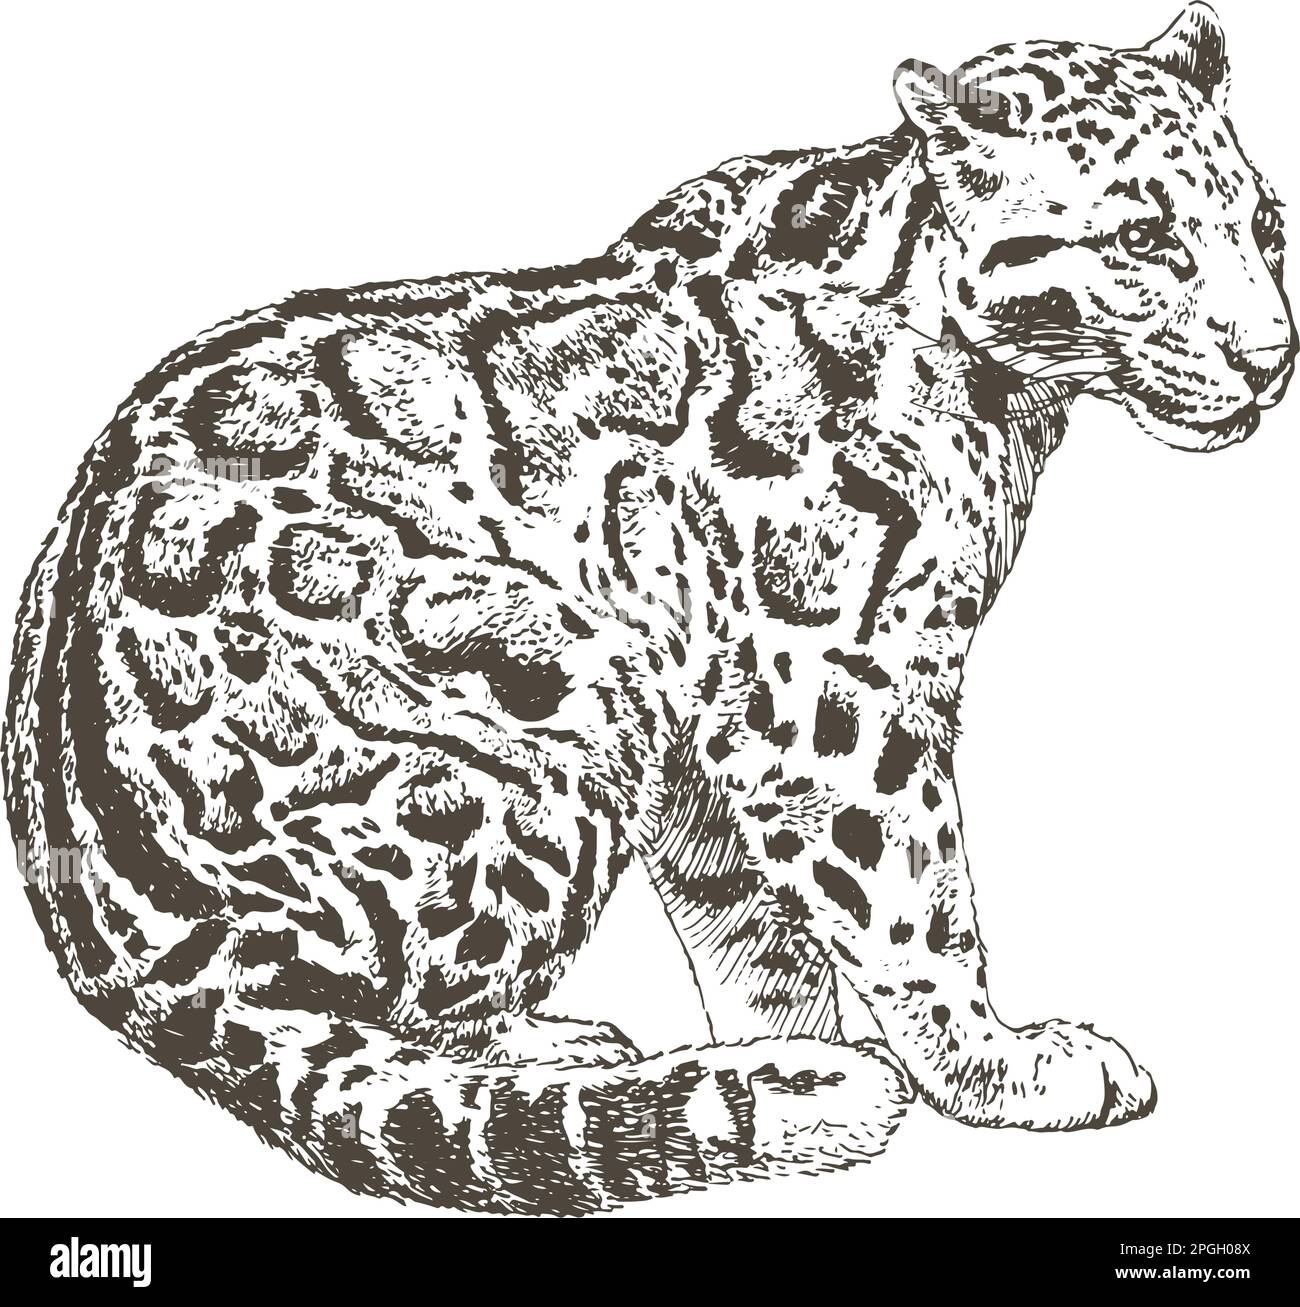 Disegno a mano schizzo realistico di leopardo nuvoloso, illustrazione vettoriale Illustrazione Vettoriale